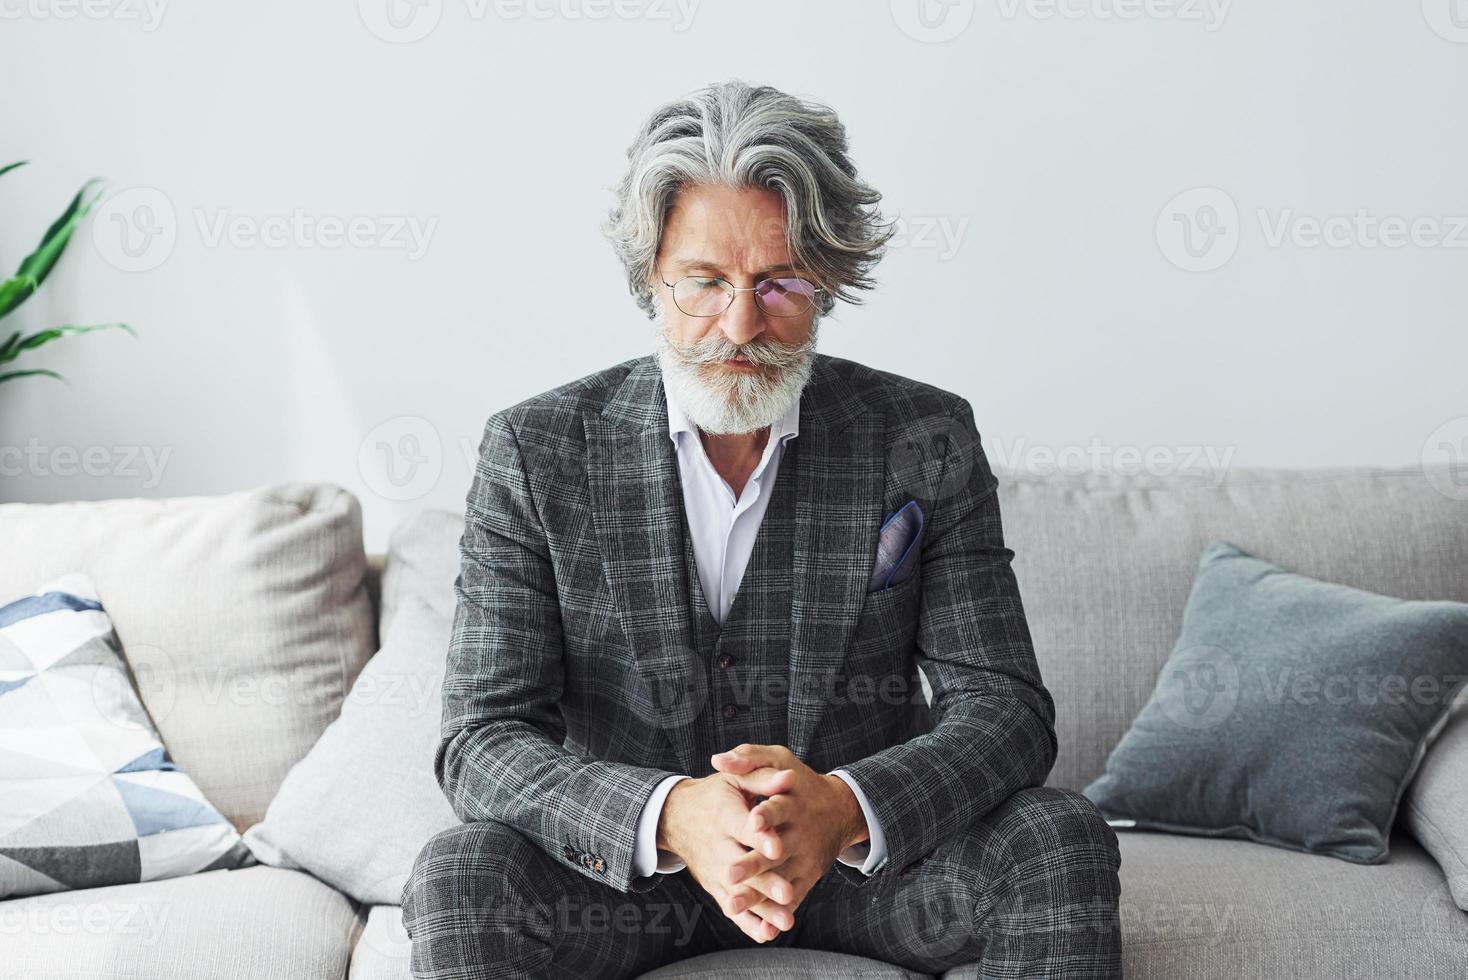 concepção de estilo bonito. homem moderno elegante sênior com cabelos grisalhos e barba dentro de casa foto